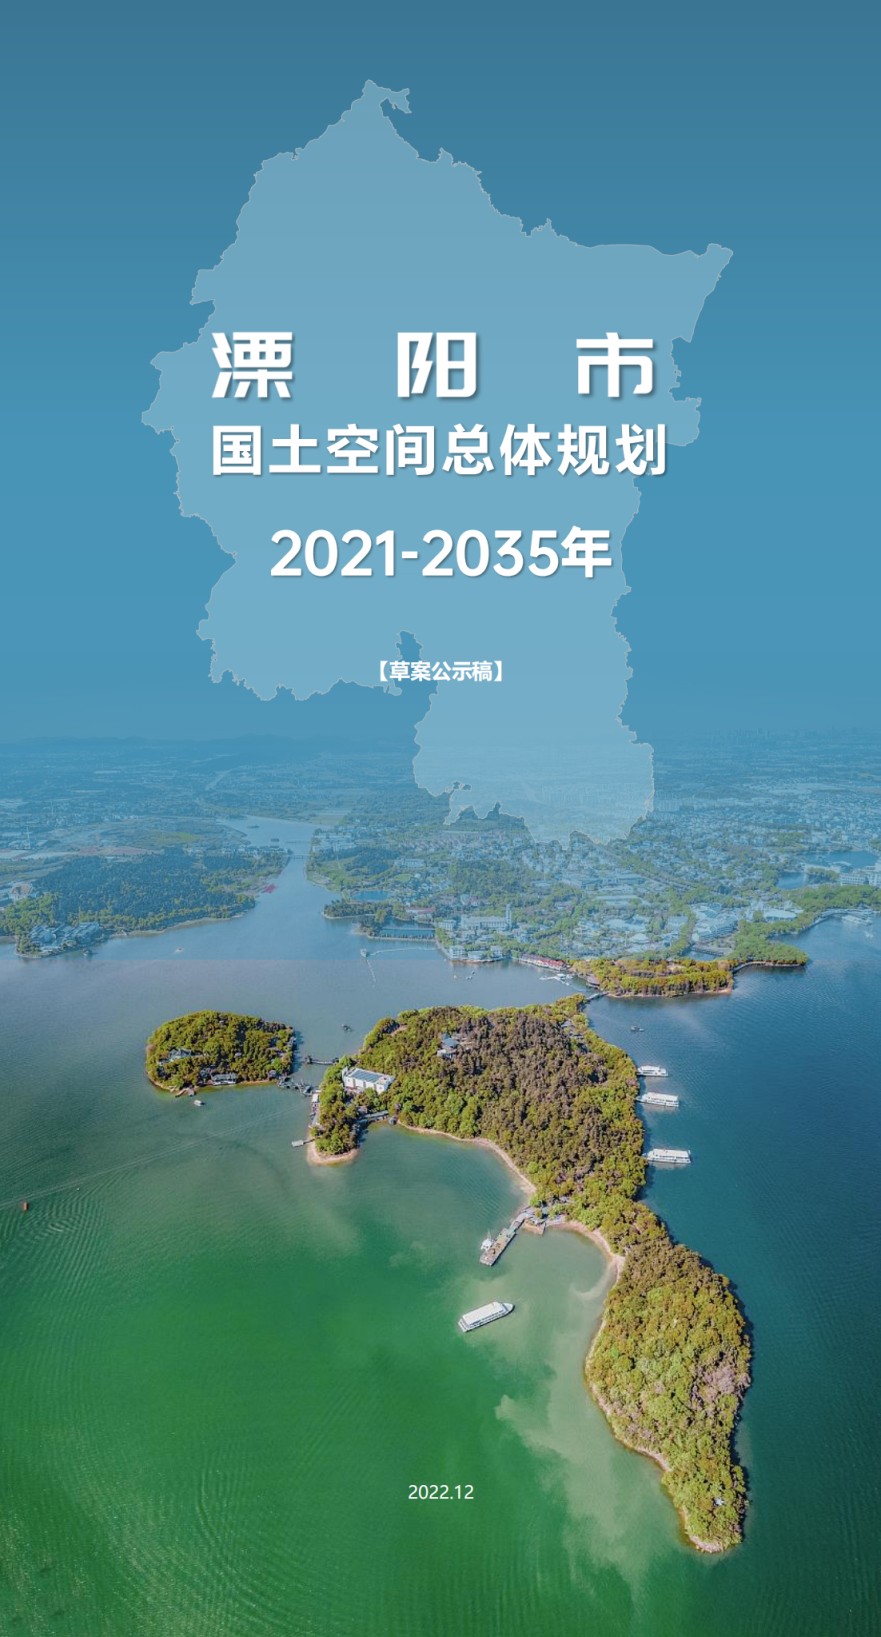 漂阳市 国土空间总体规划 2021-2035年